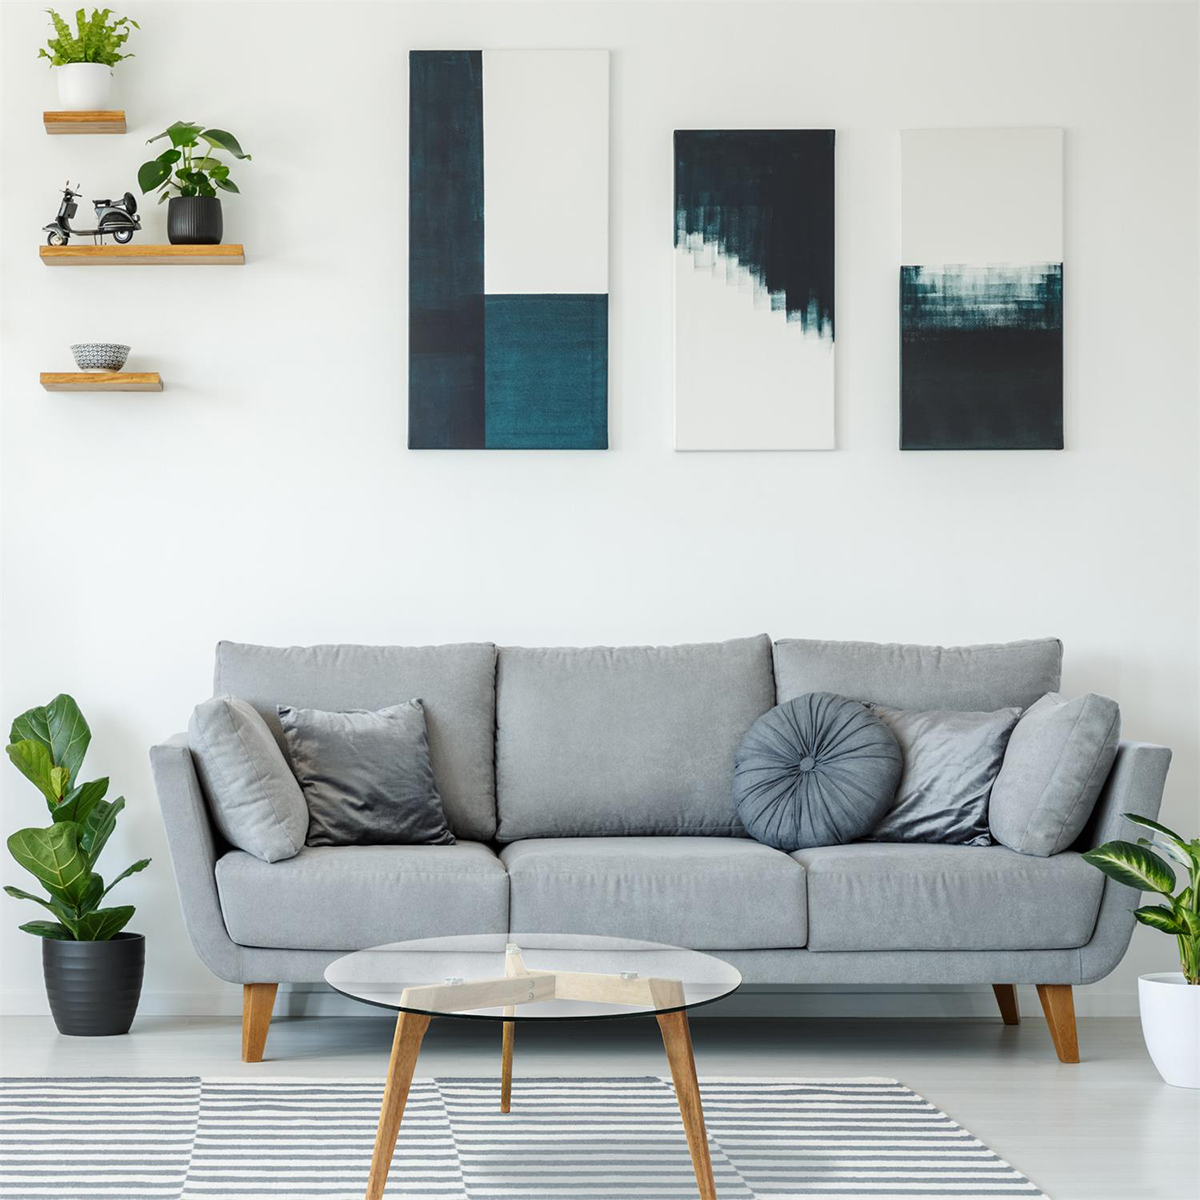 Comment associer un meuble avec la couleur de son mur ?